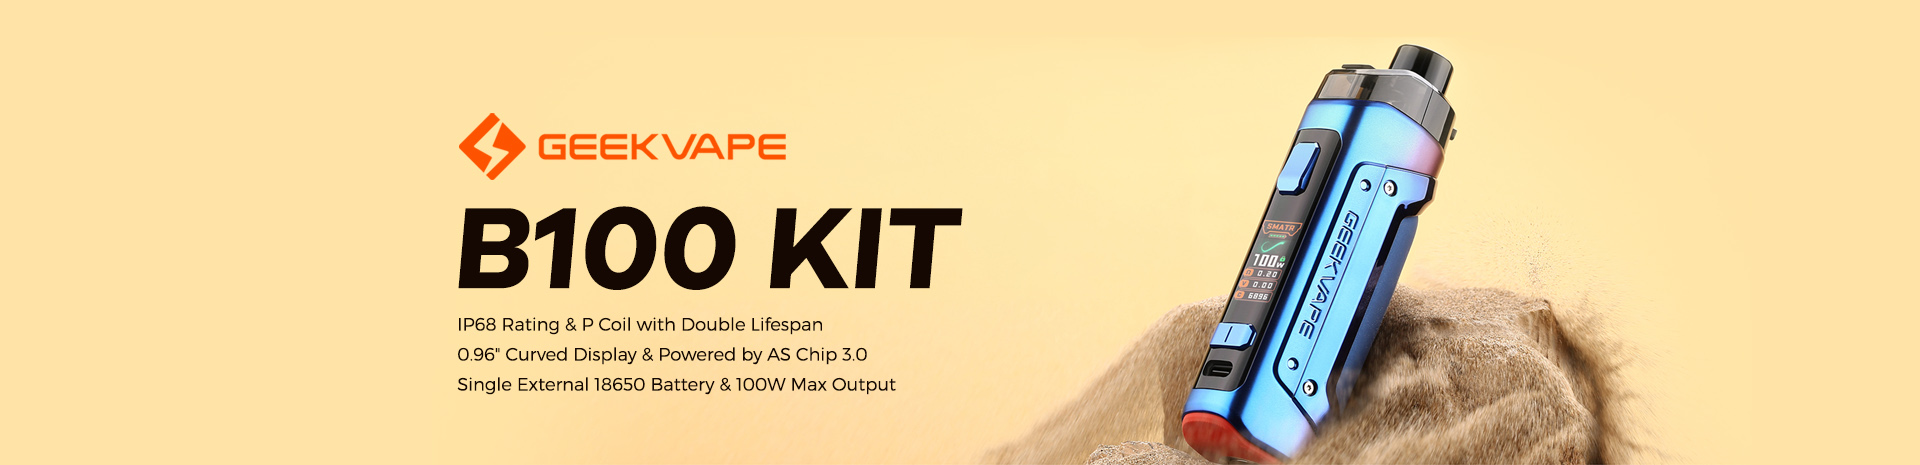 GeekVape B100 Kit Banner